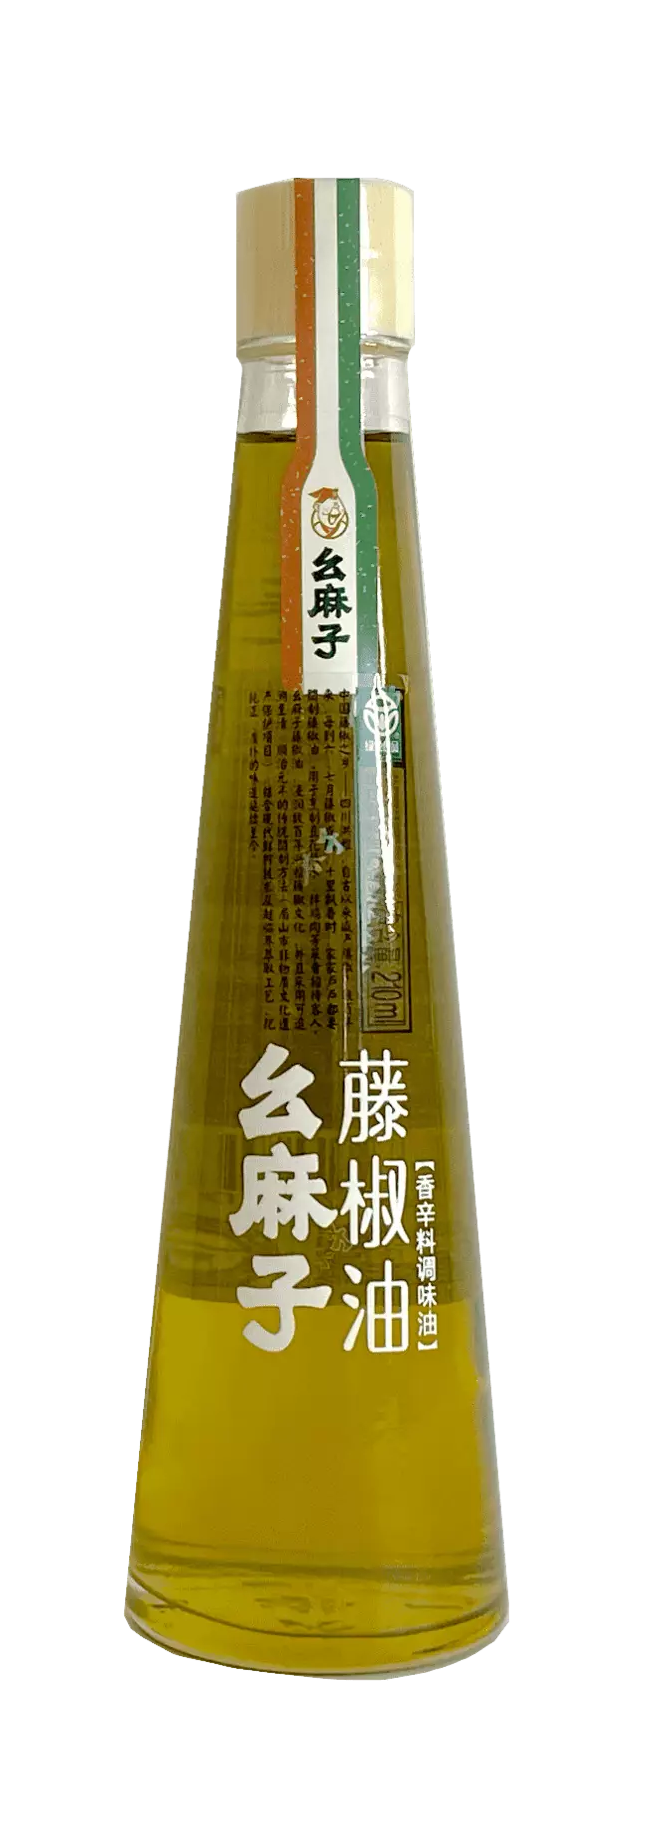 Green Sichuan Pepper Oil 210ml Yaomazi China